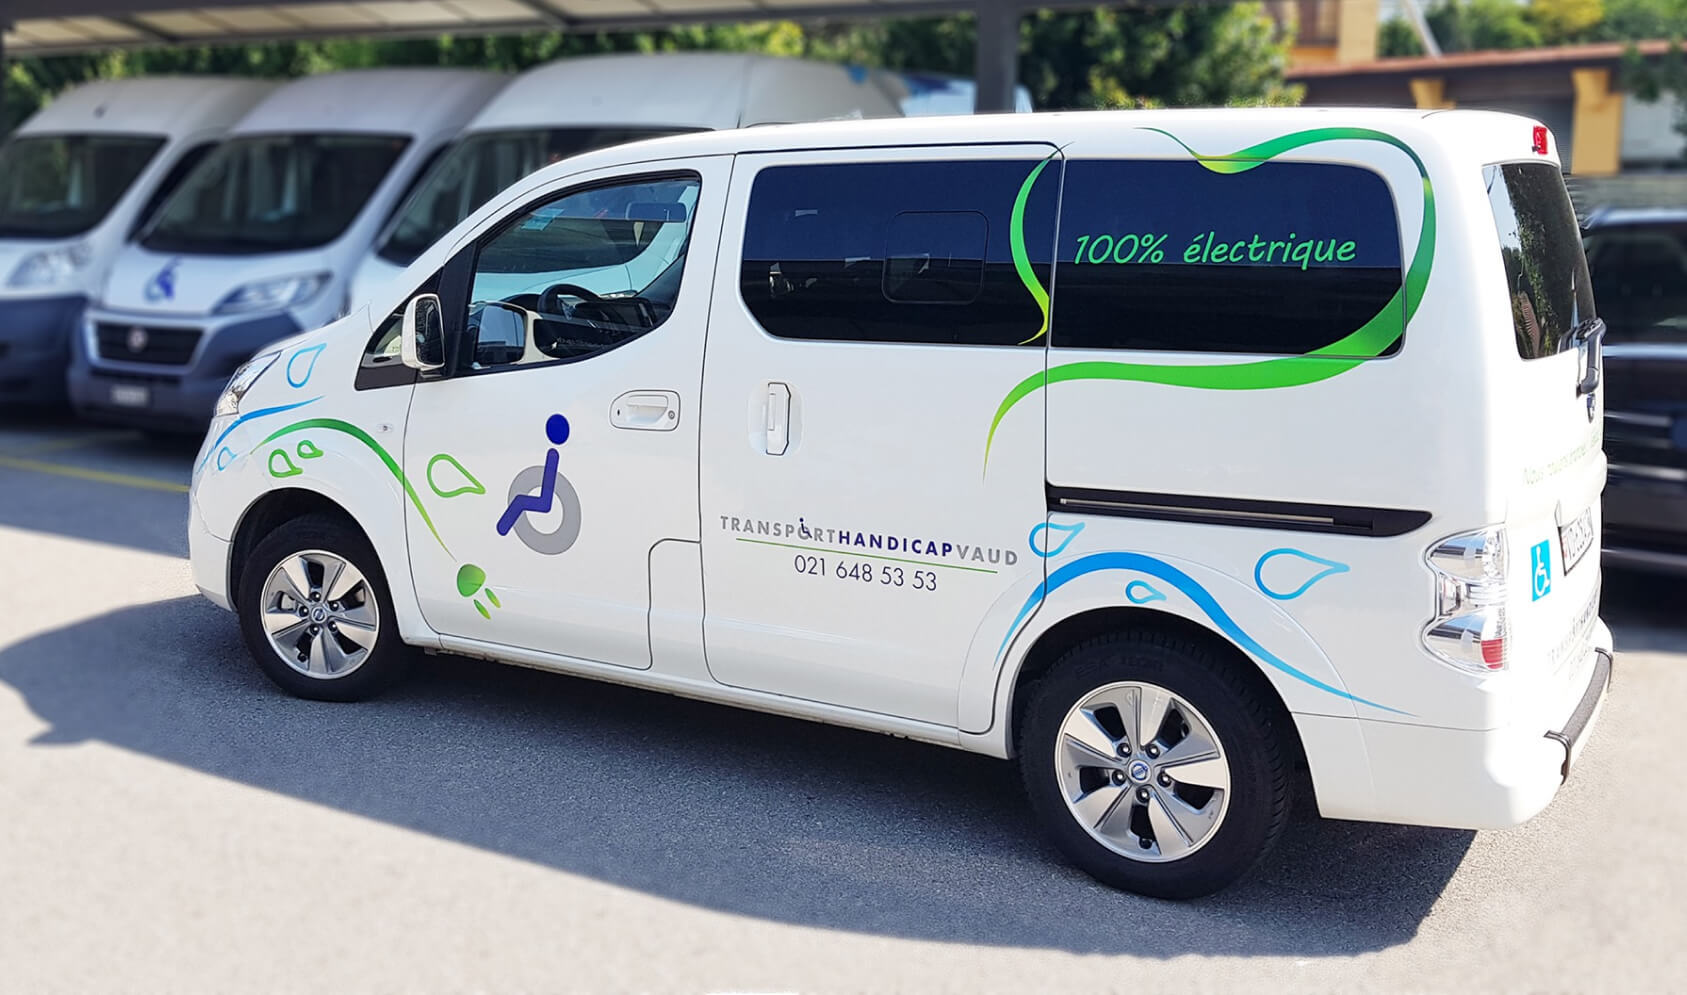 Transport Handicap Vaud - Responsabilité environnementale